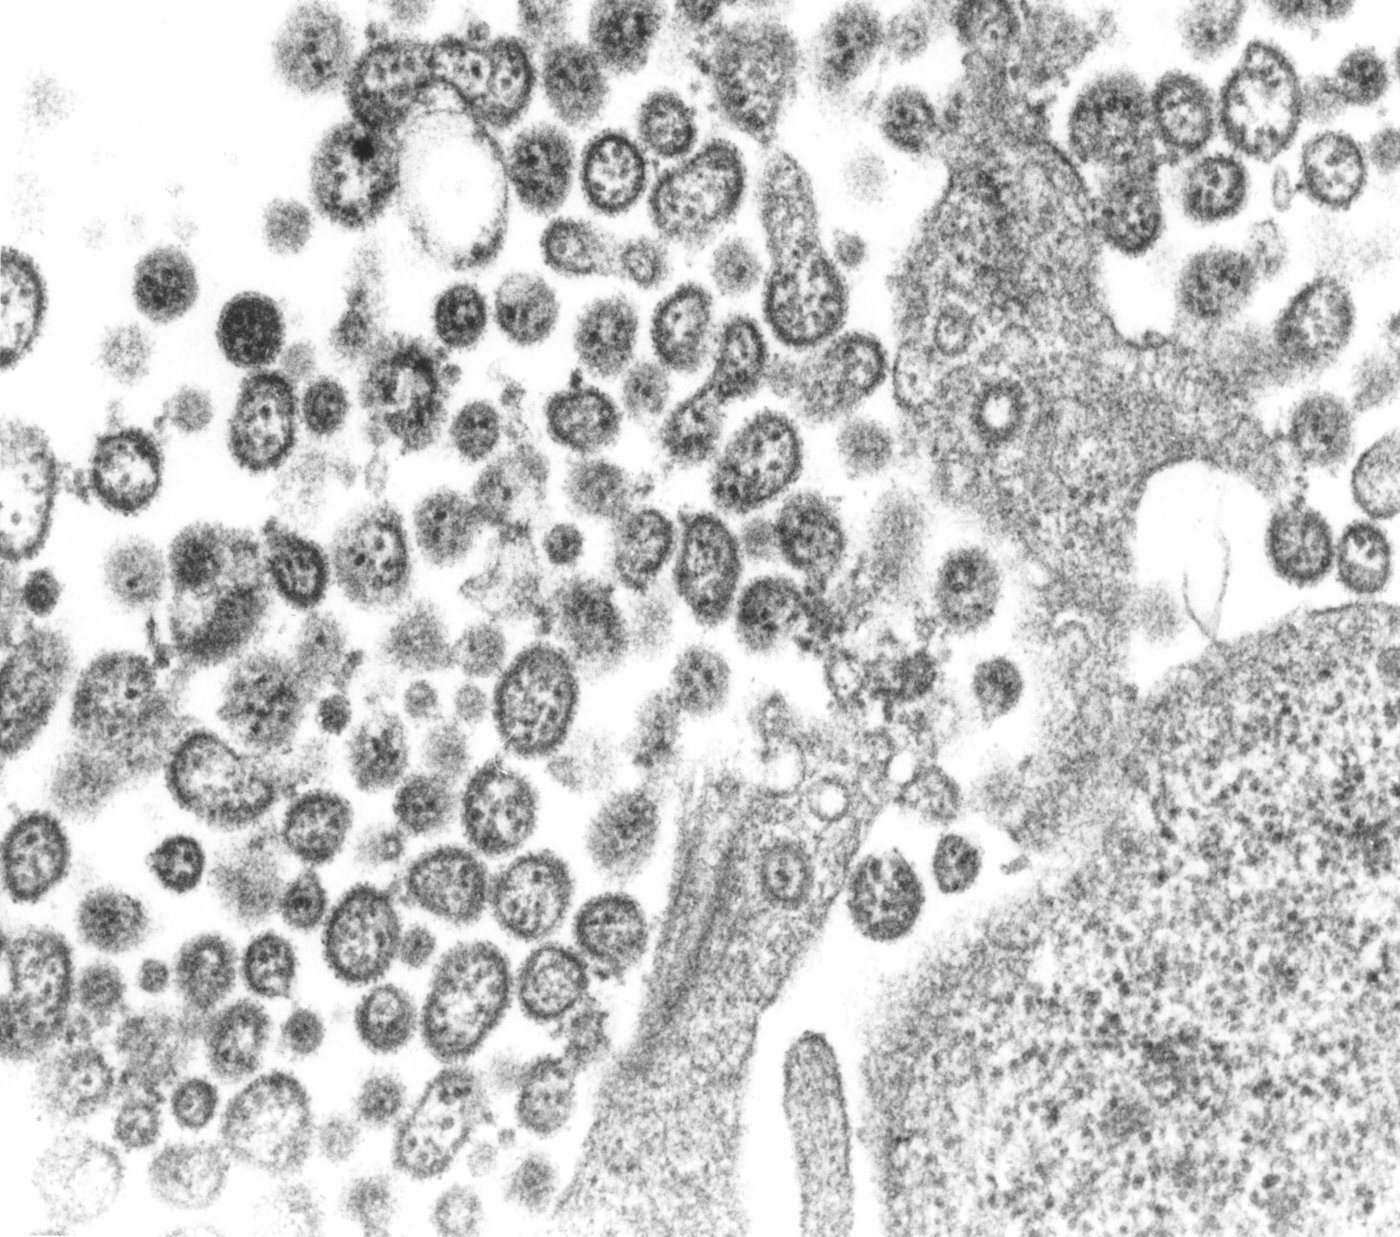 Das Foto zeigt eine elektronenmikroskopische Aufnahme von etwa 30 Lassa-Viruspartikeln.